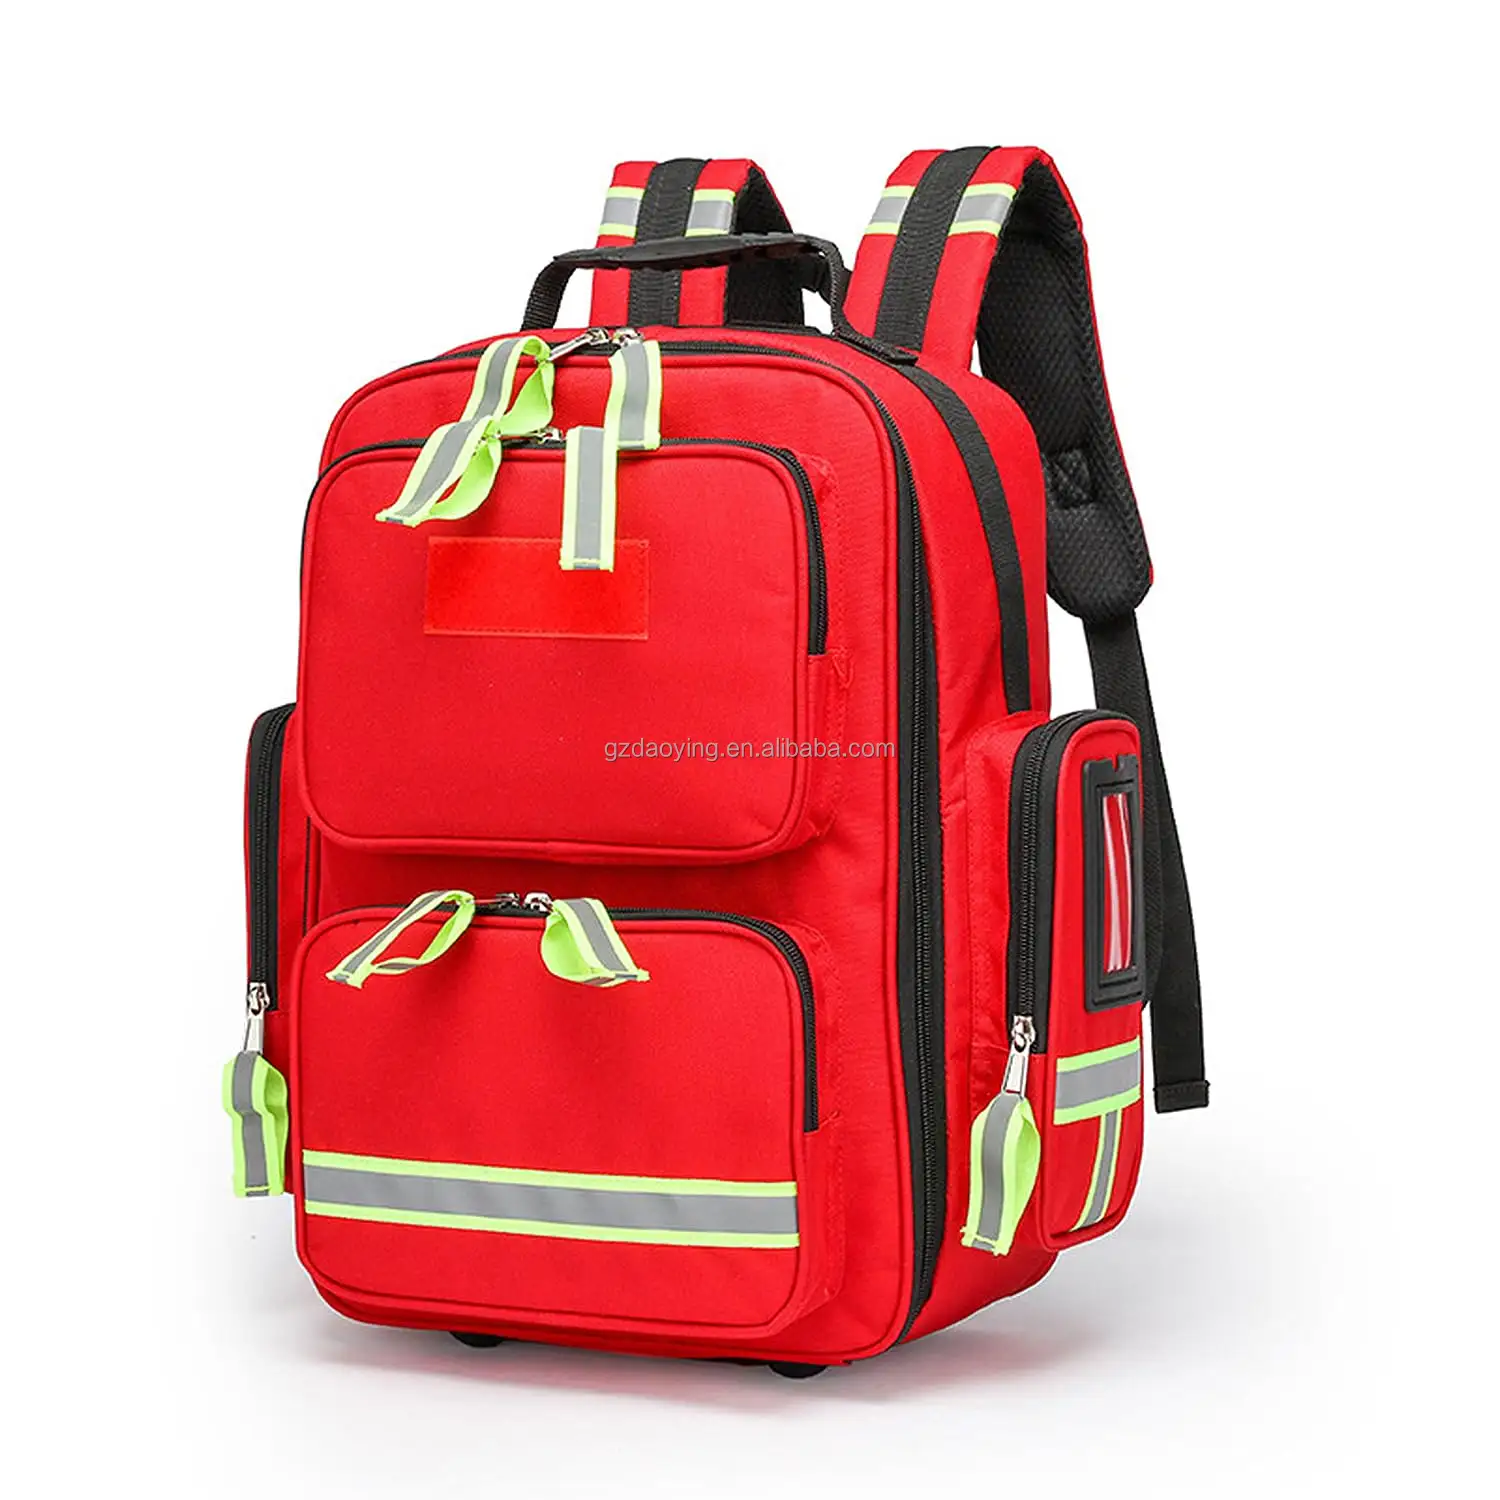 ओम कस्टम चिकित्सा आउटडोर यात्रा बचाव प्रथम सहायता किट बैकपैक पहले उत्तरदाताओं ने आपातकालीन आघात बैग